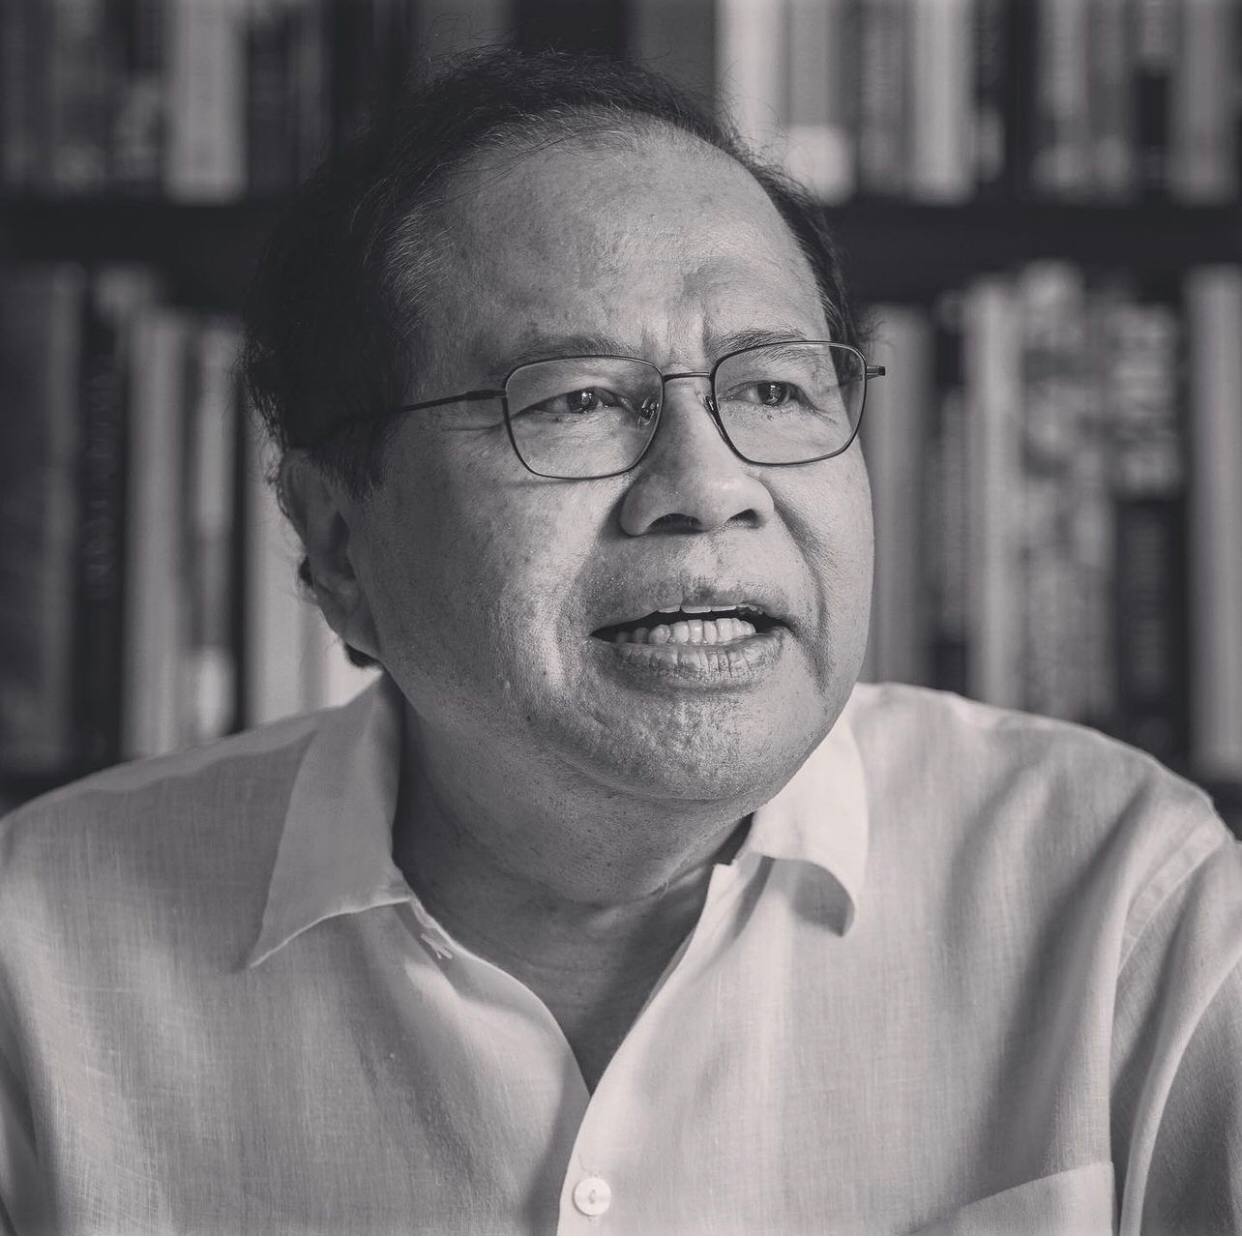 Sejumlah Pejabat Mengenang Rizal Ramli Semasa Hidup 